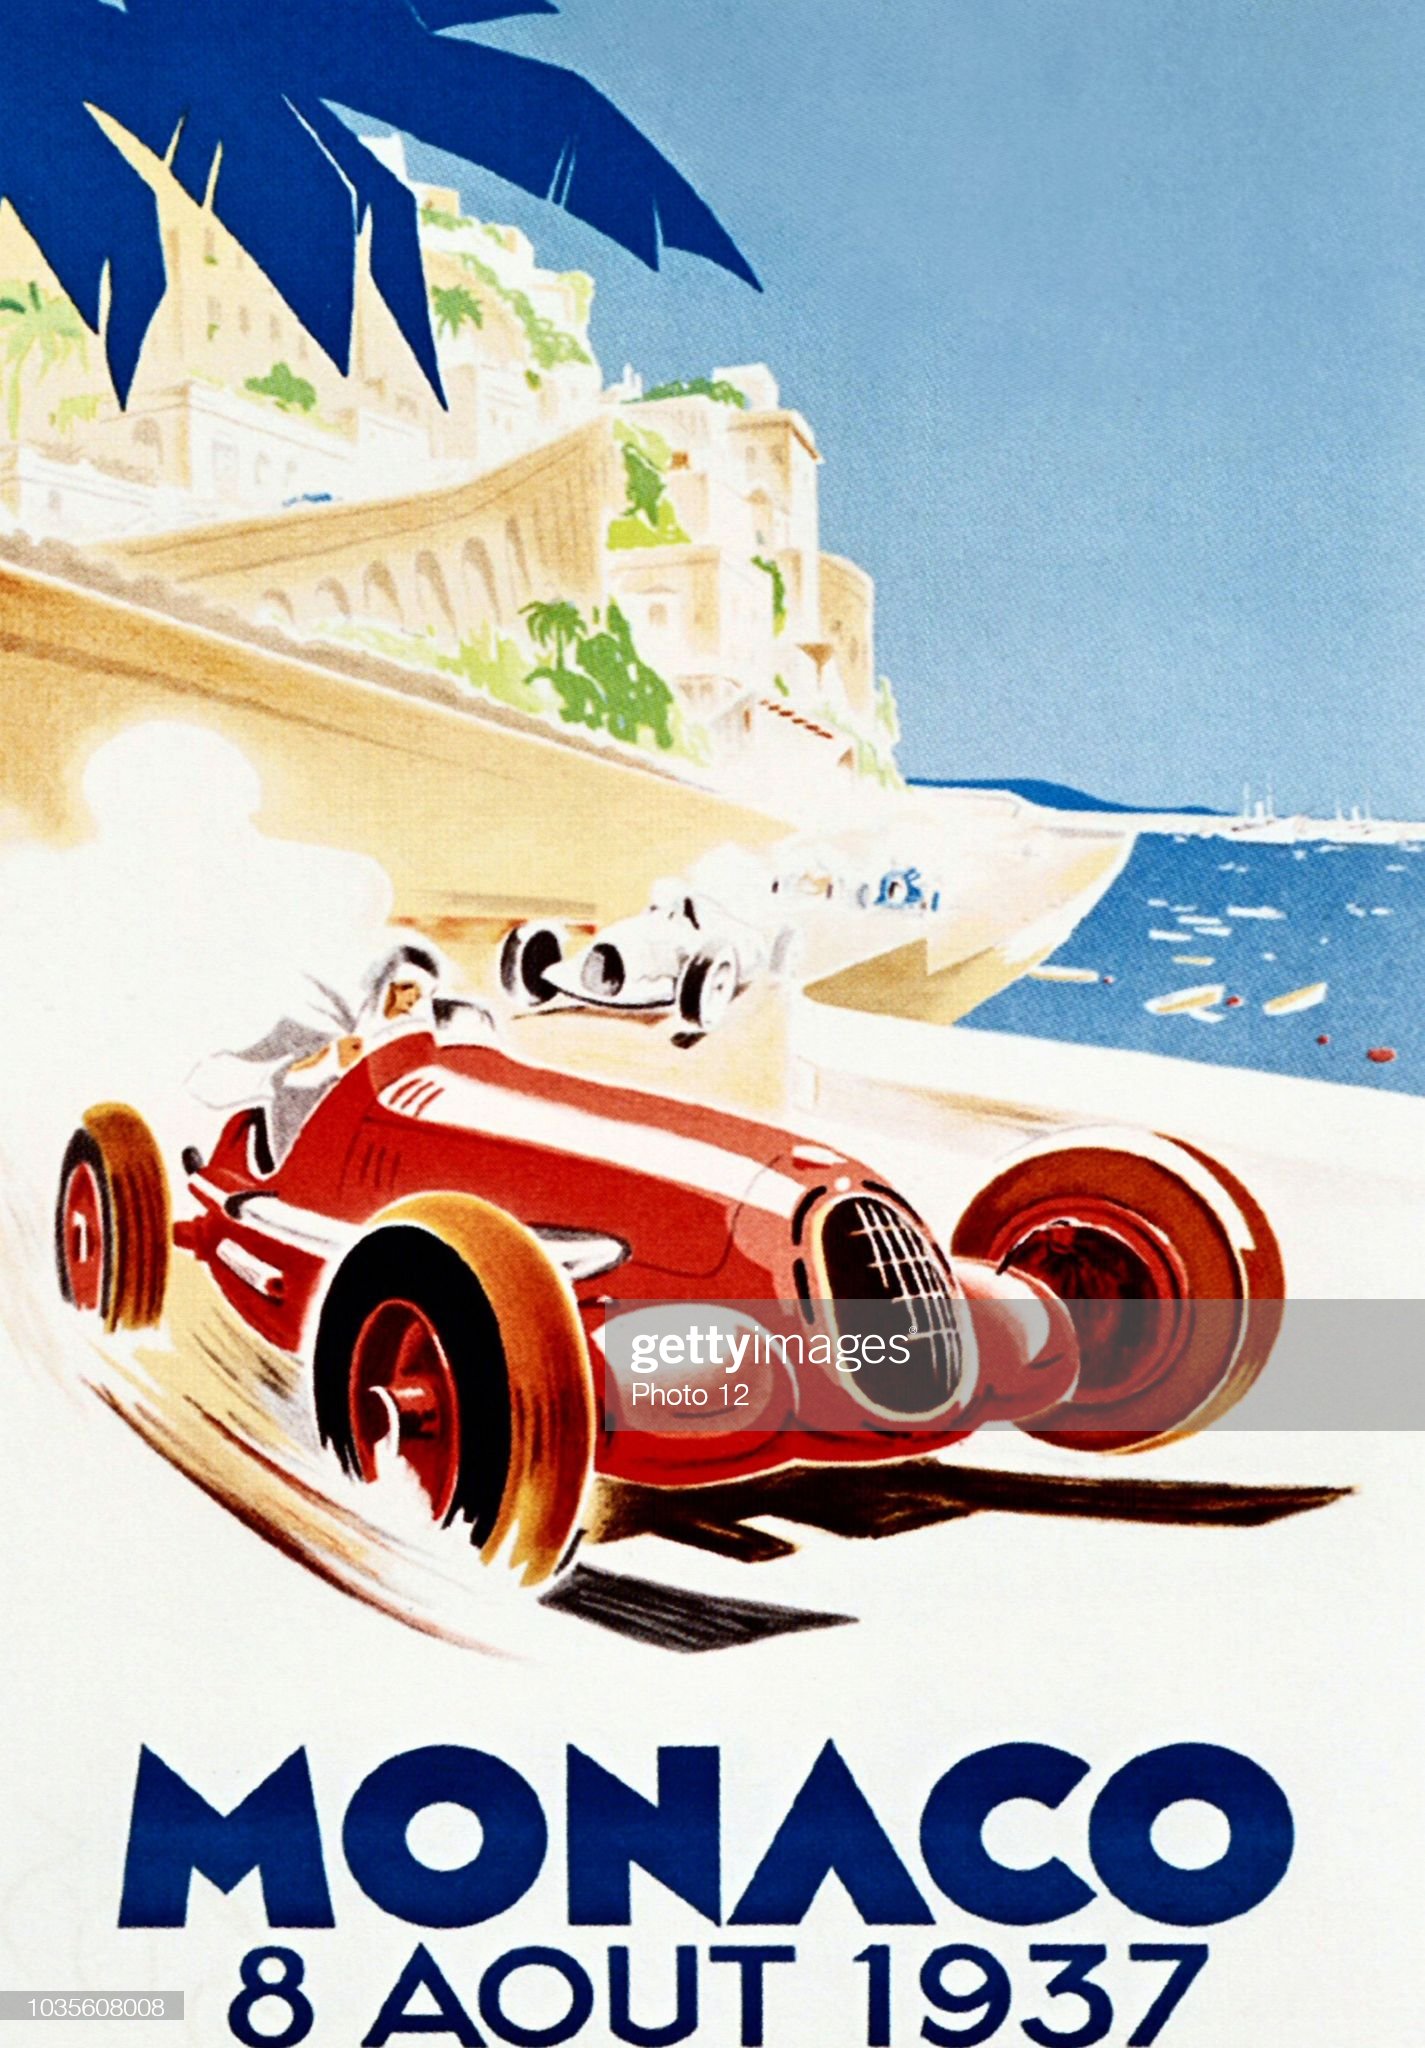 Poster of the 1937 Monaco Grand Prix.